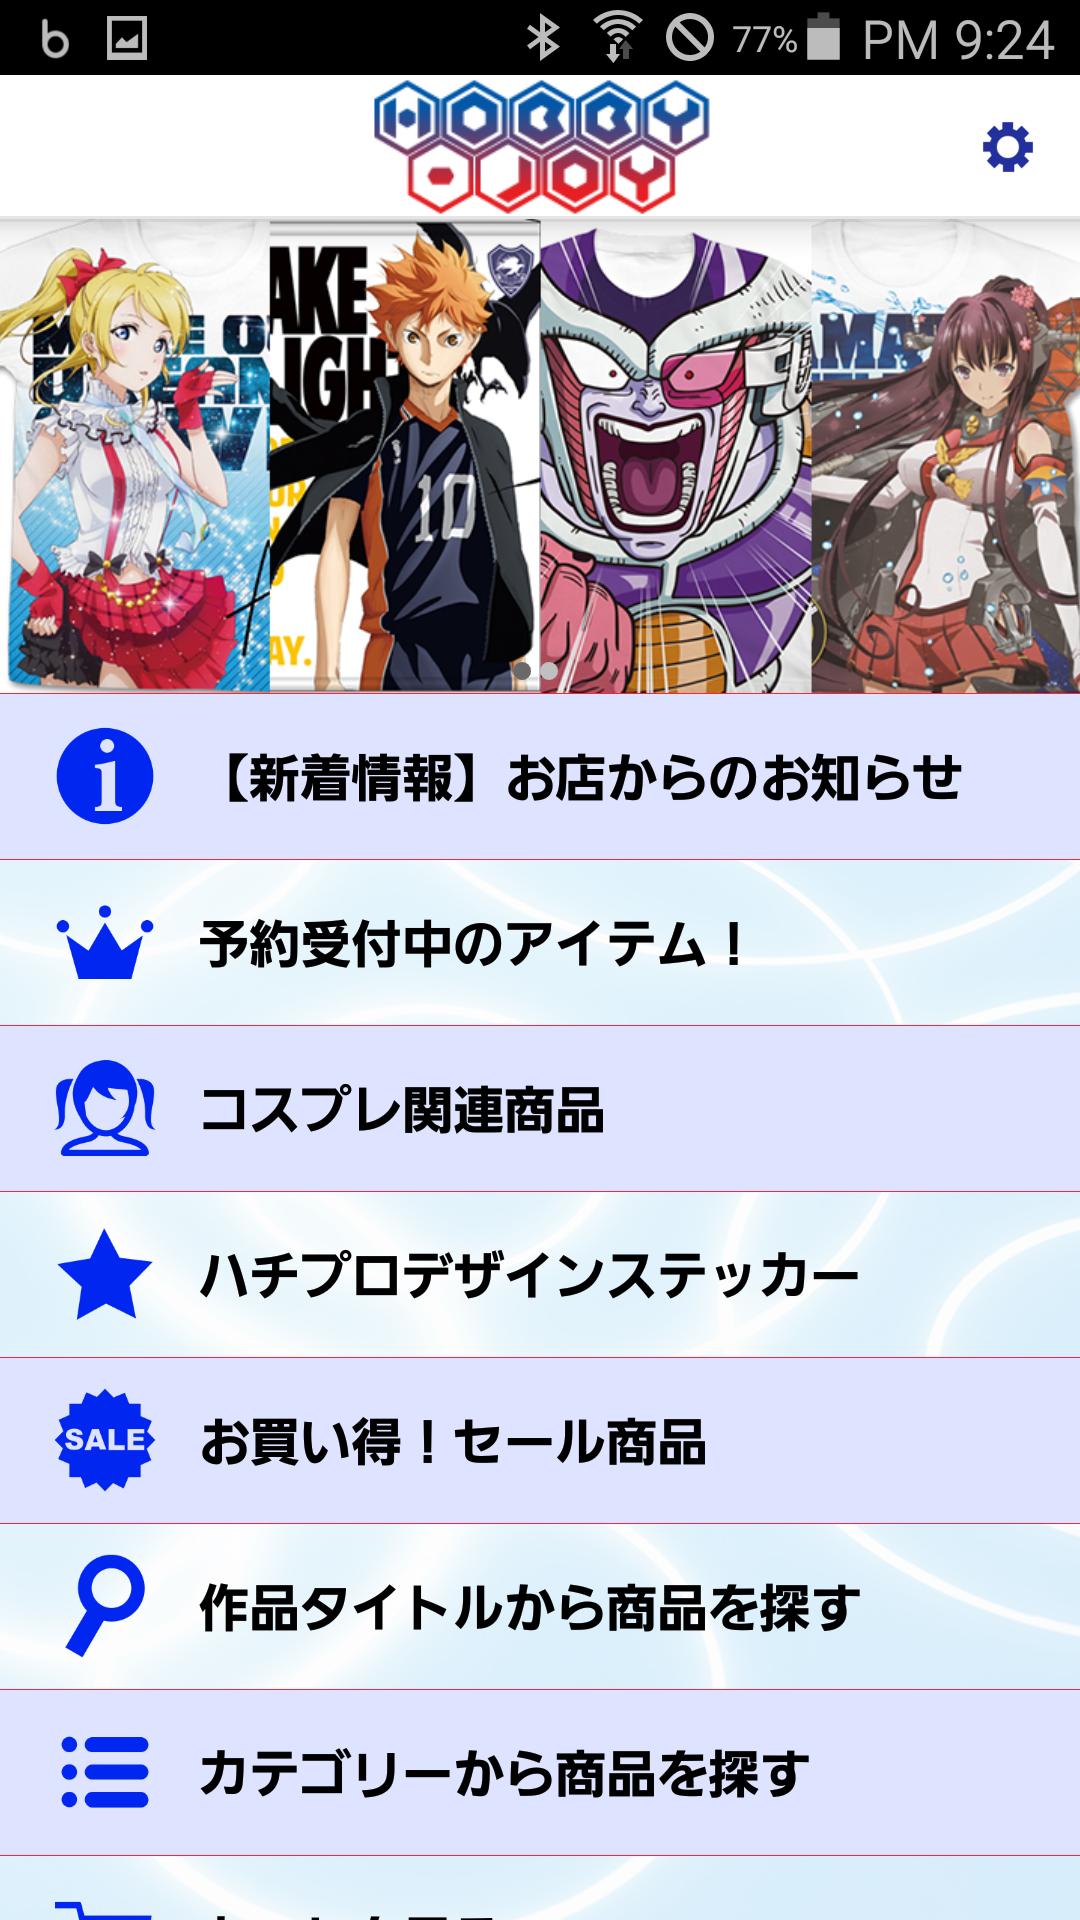 アニメキャラクターグッズ コスプレなら Hobby Joy For Android Apk Download